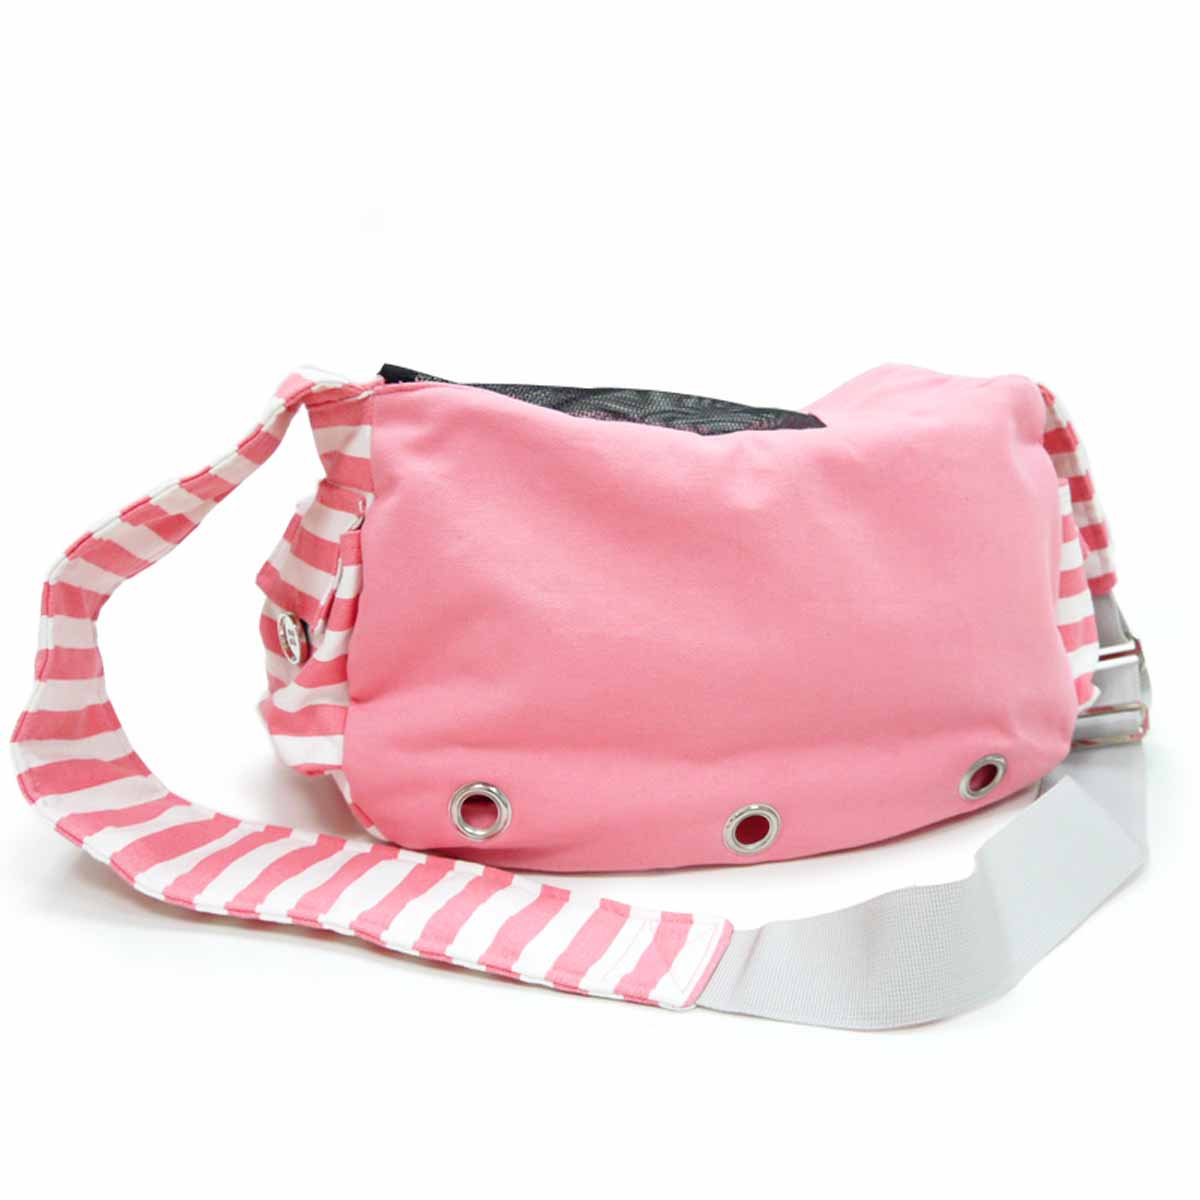 Soft Sling Bag Dog Carrier by Dogo - Pink